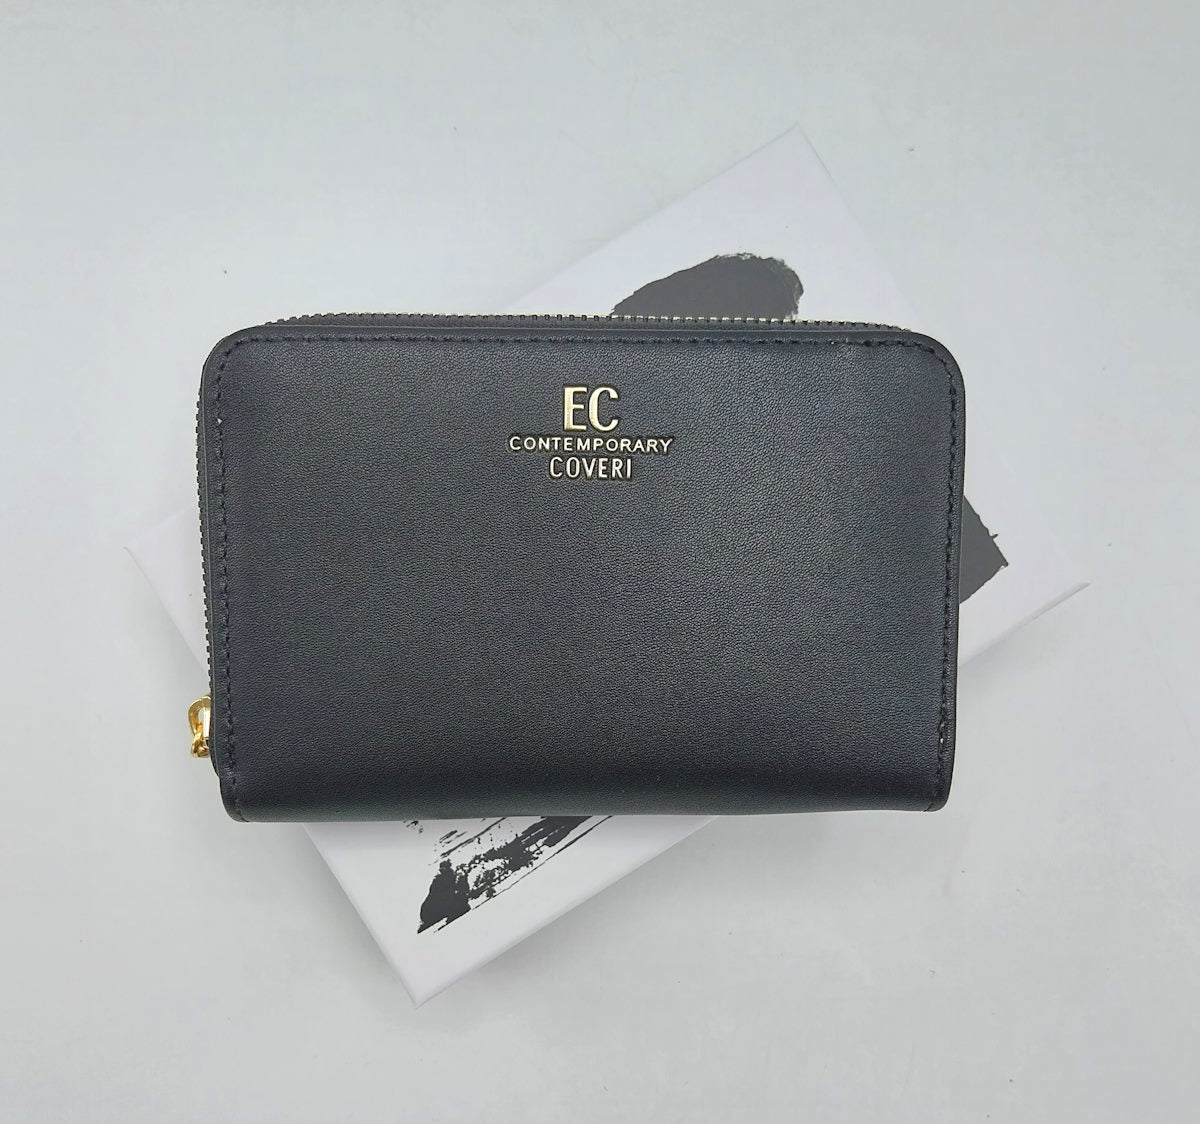 Eco leather wallet, EC Coveri, art. EC24506-004